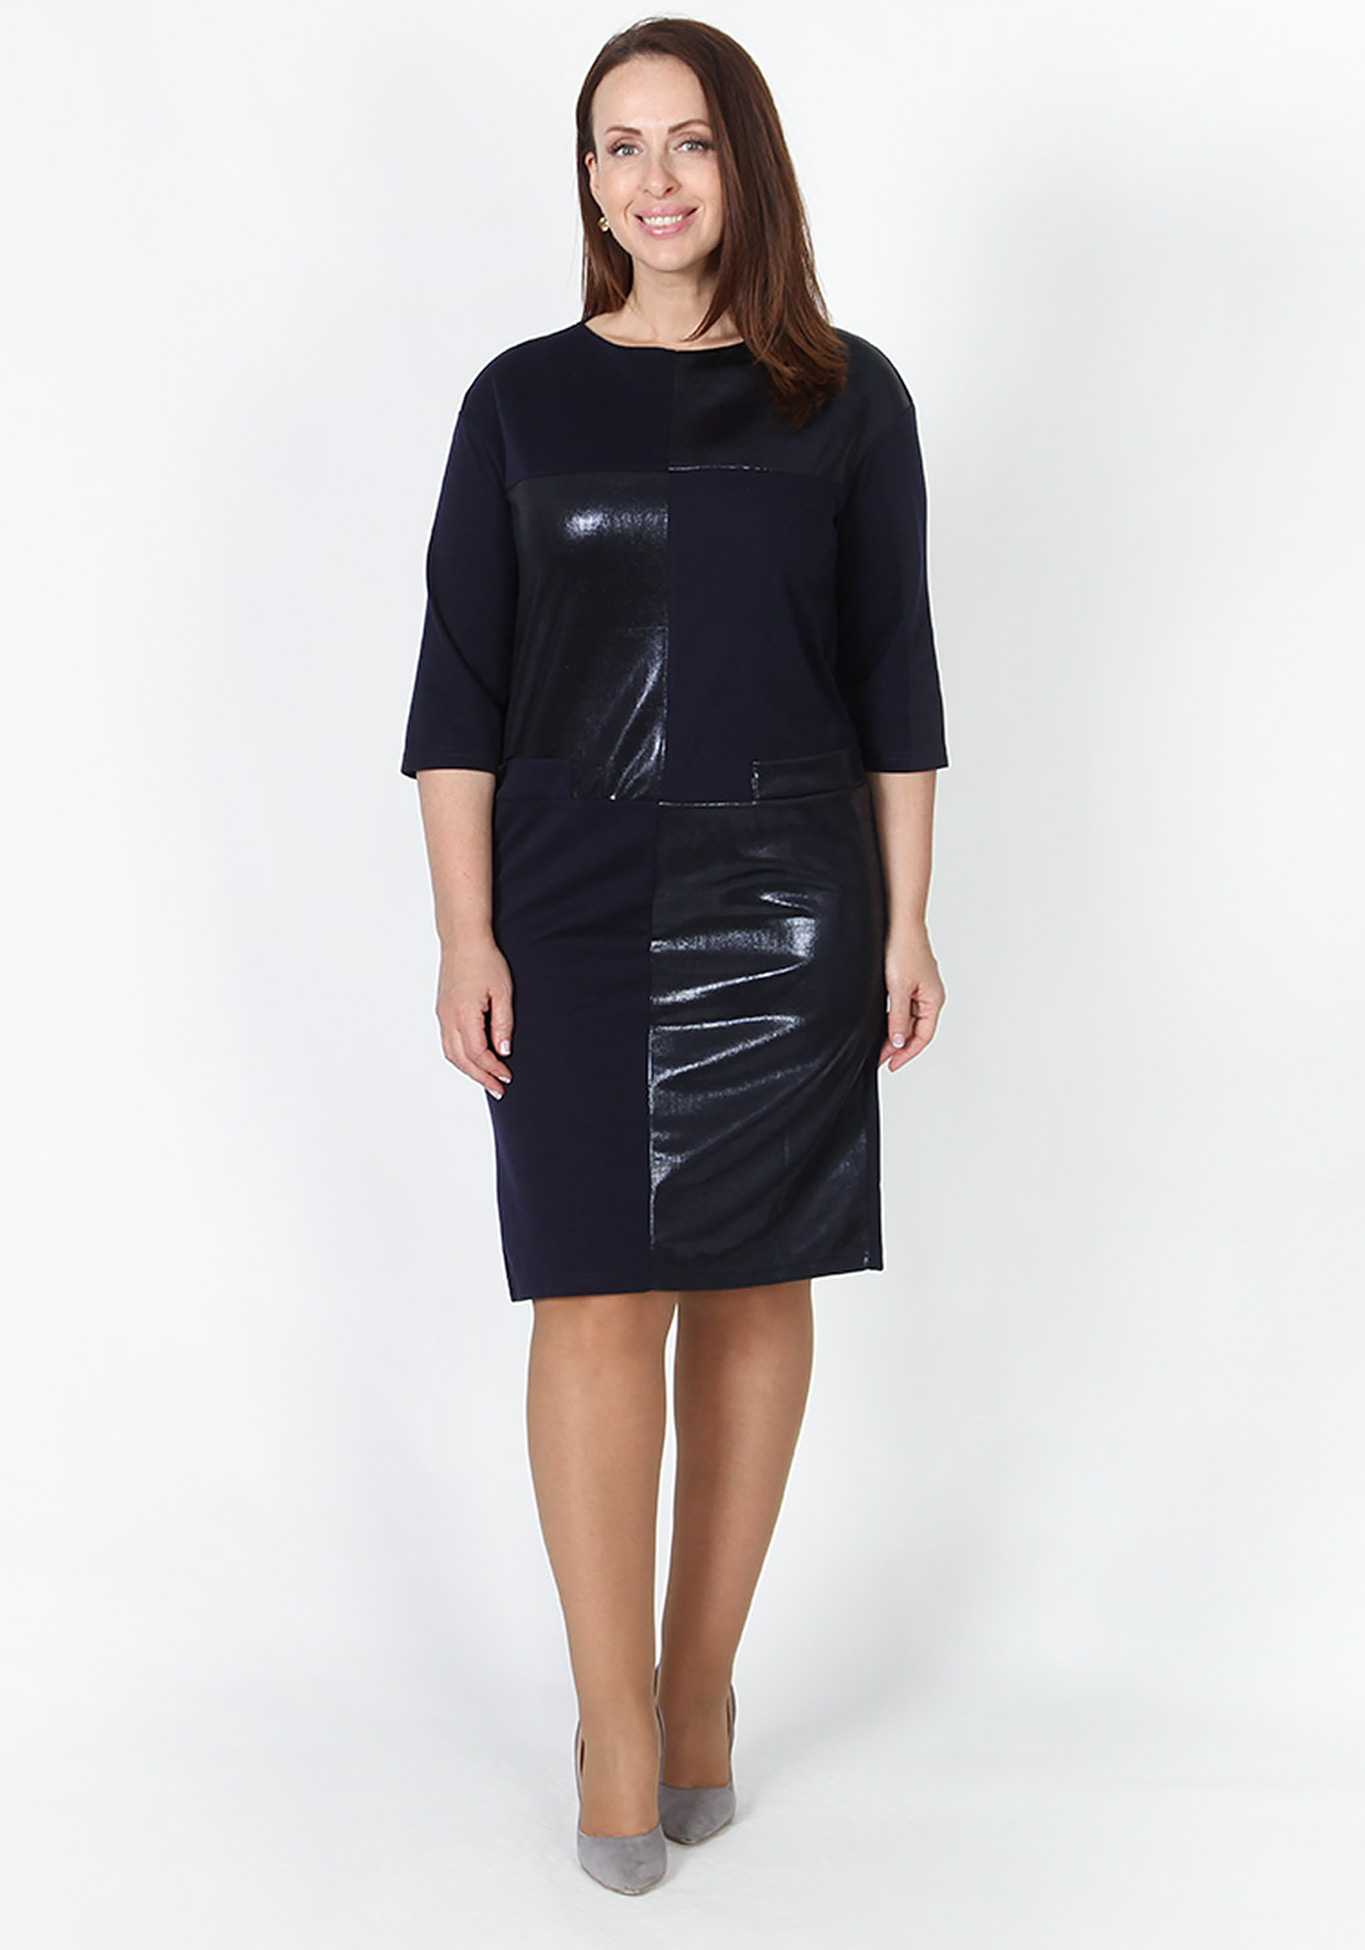 Платье «Триана» Veas, размер 48, цвет черный прямая модель - фото 2